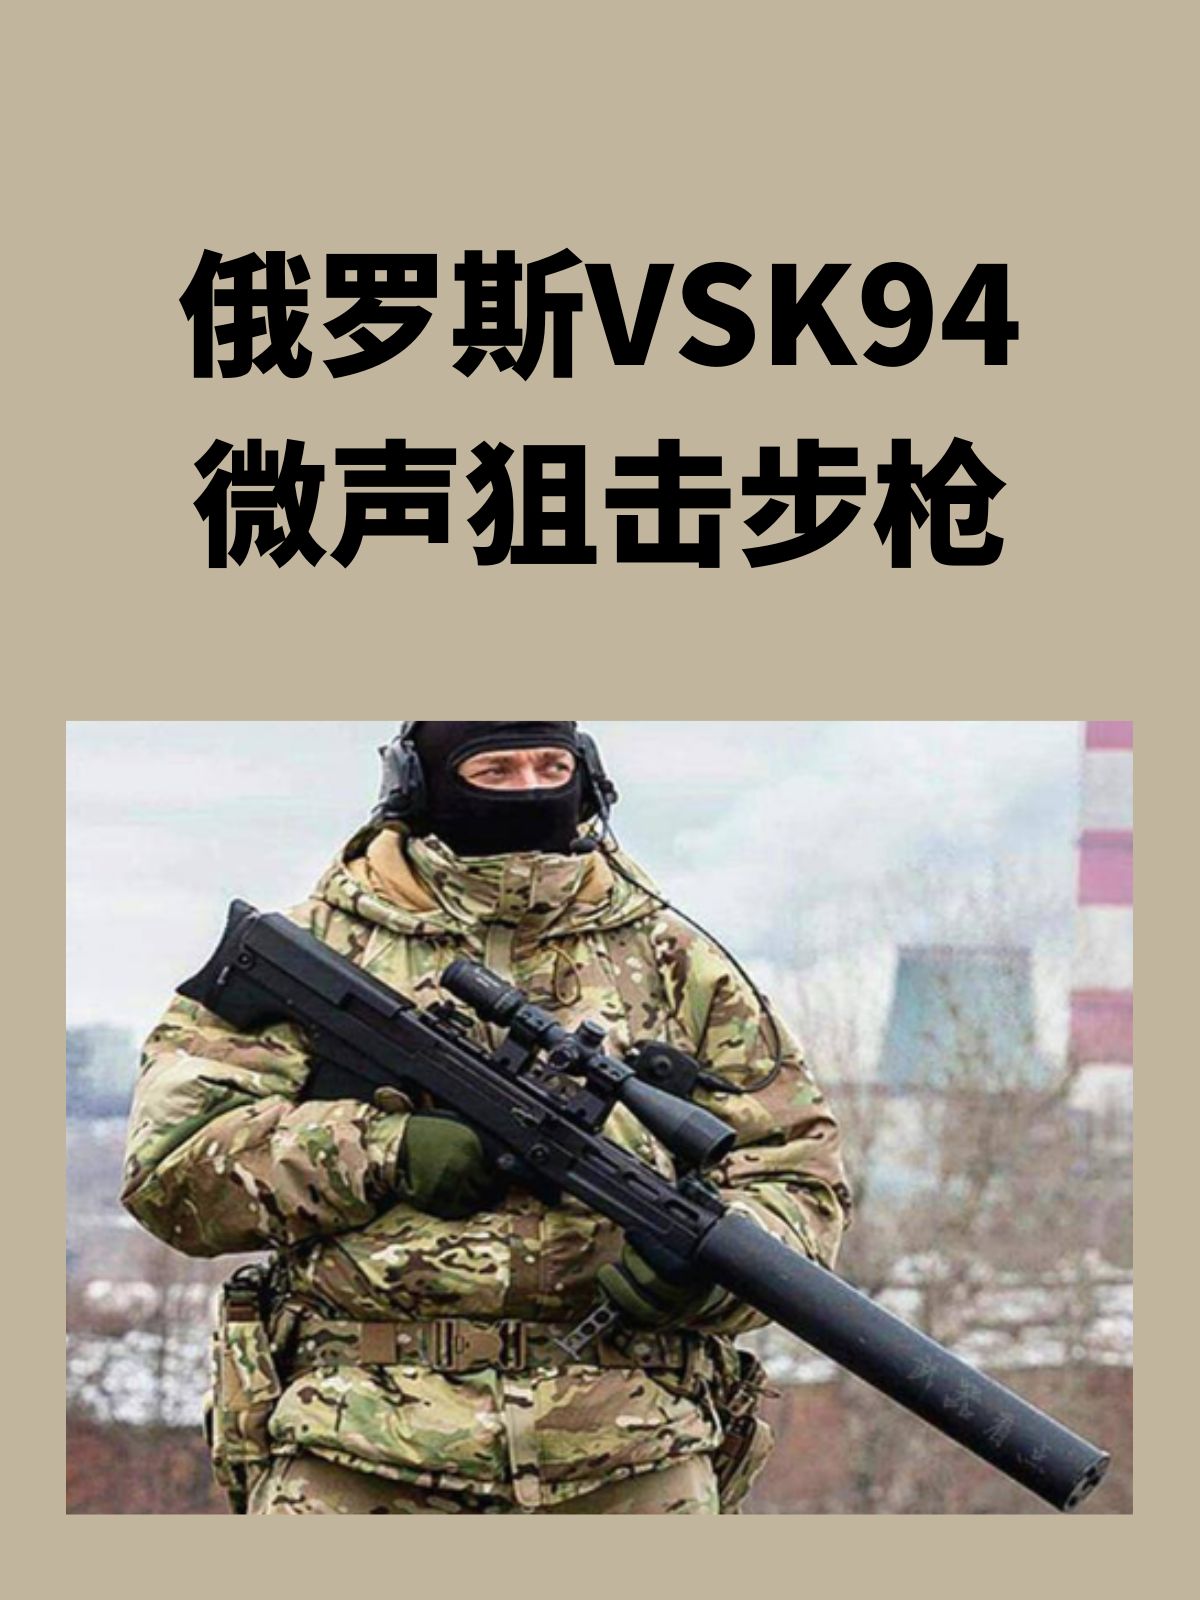 俄罗斯VSK-94微声狙击步枪